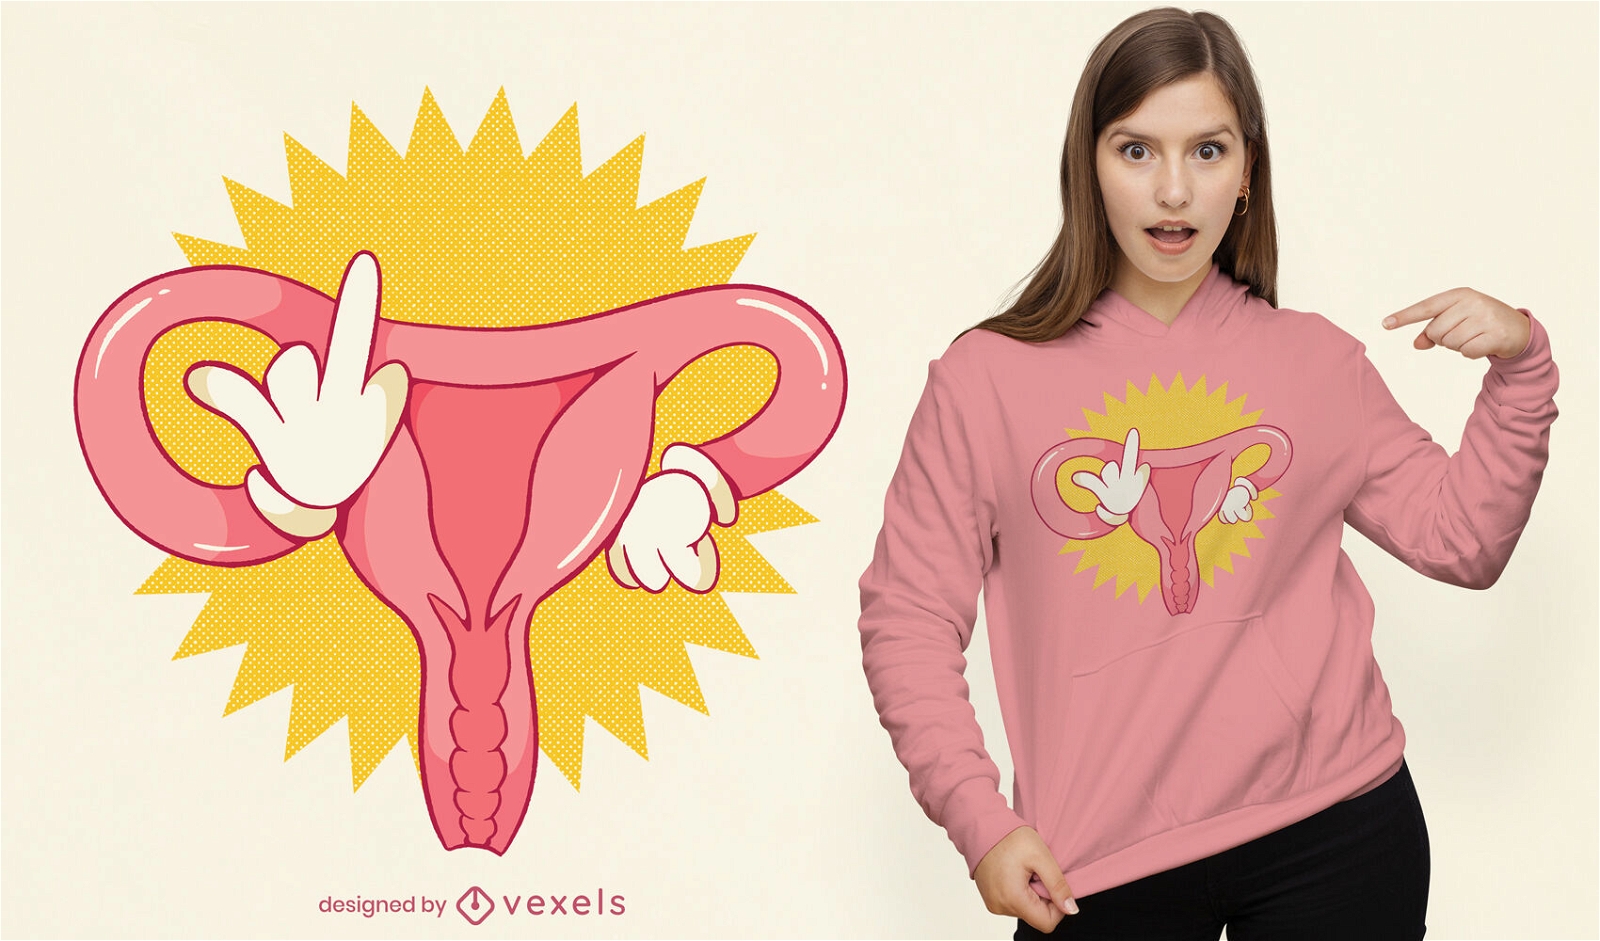 Angry uterus feminist t-shirt design